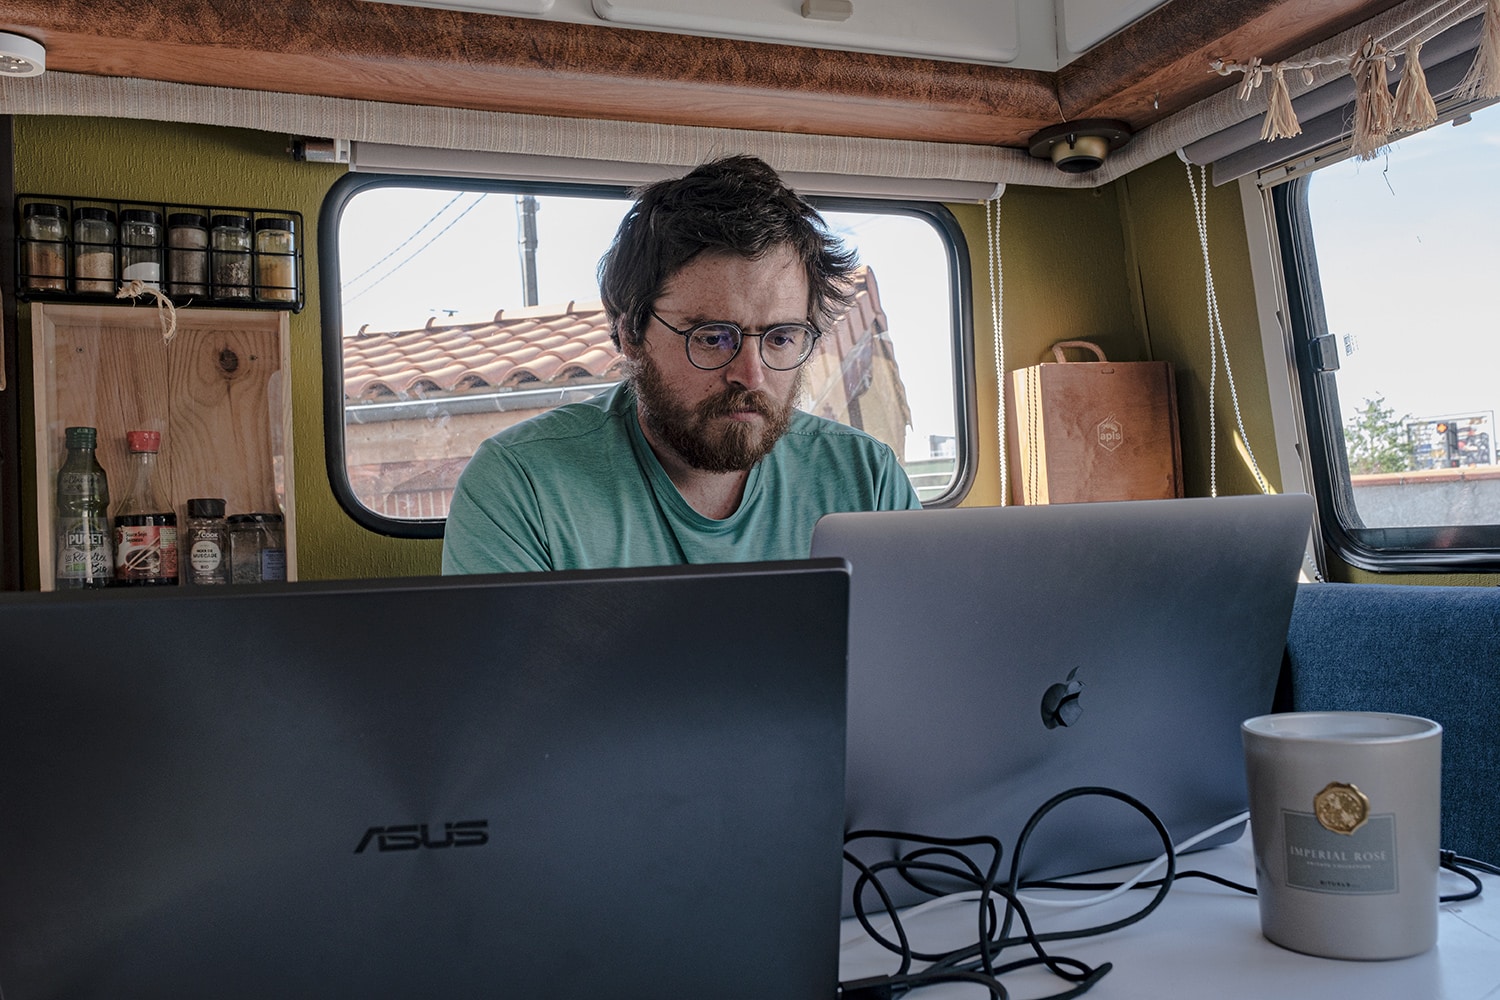 Travailler sur son ordinateur dans son camping-car nécessite des panneaux solaires